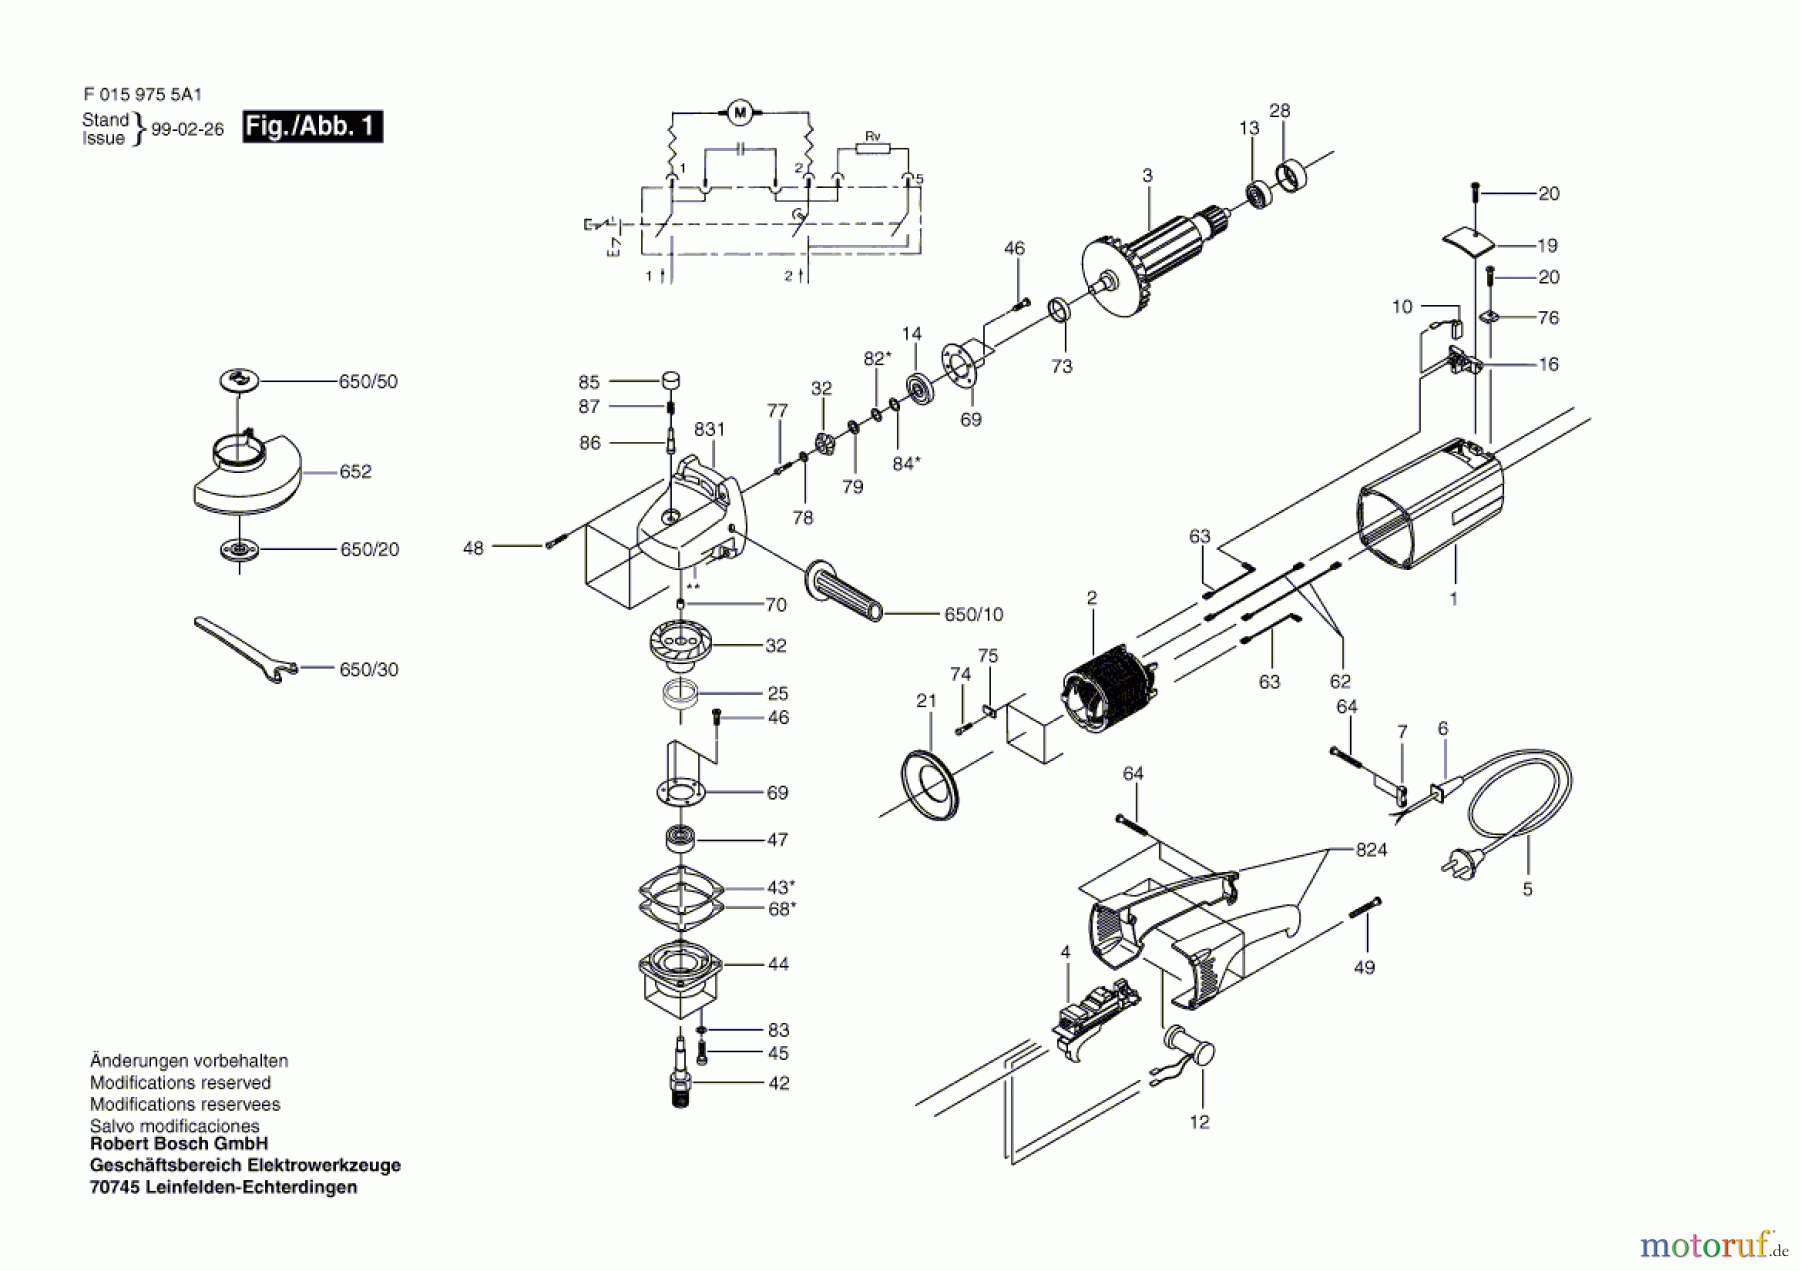  Bosch Werkzeug Winkelschleifer 9755 Seite 1